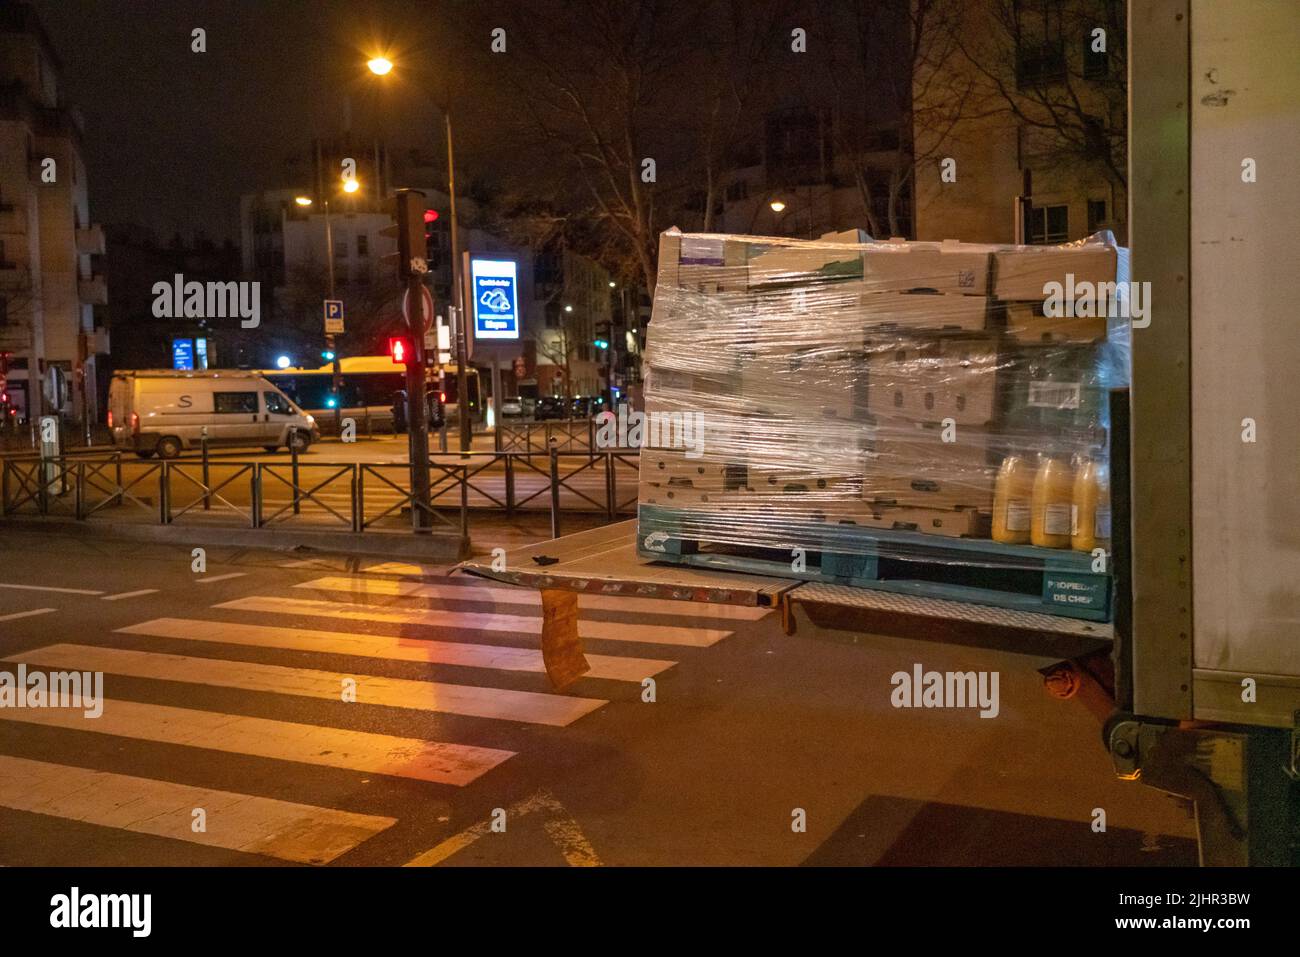 France, Ile de France region, Paris, 14th arrondissement, avenue du Maine, provision of supplies in stores, Stock Photo